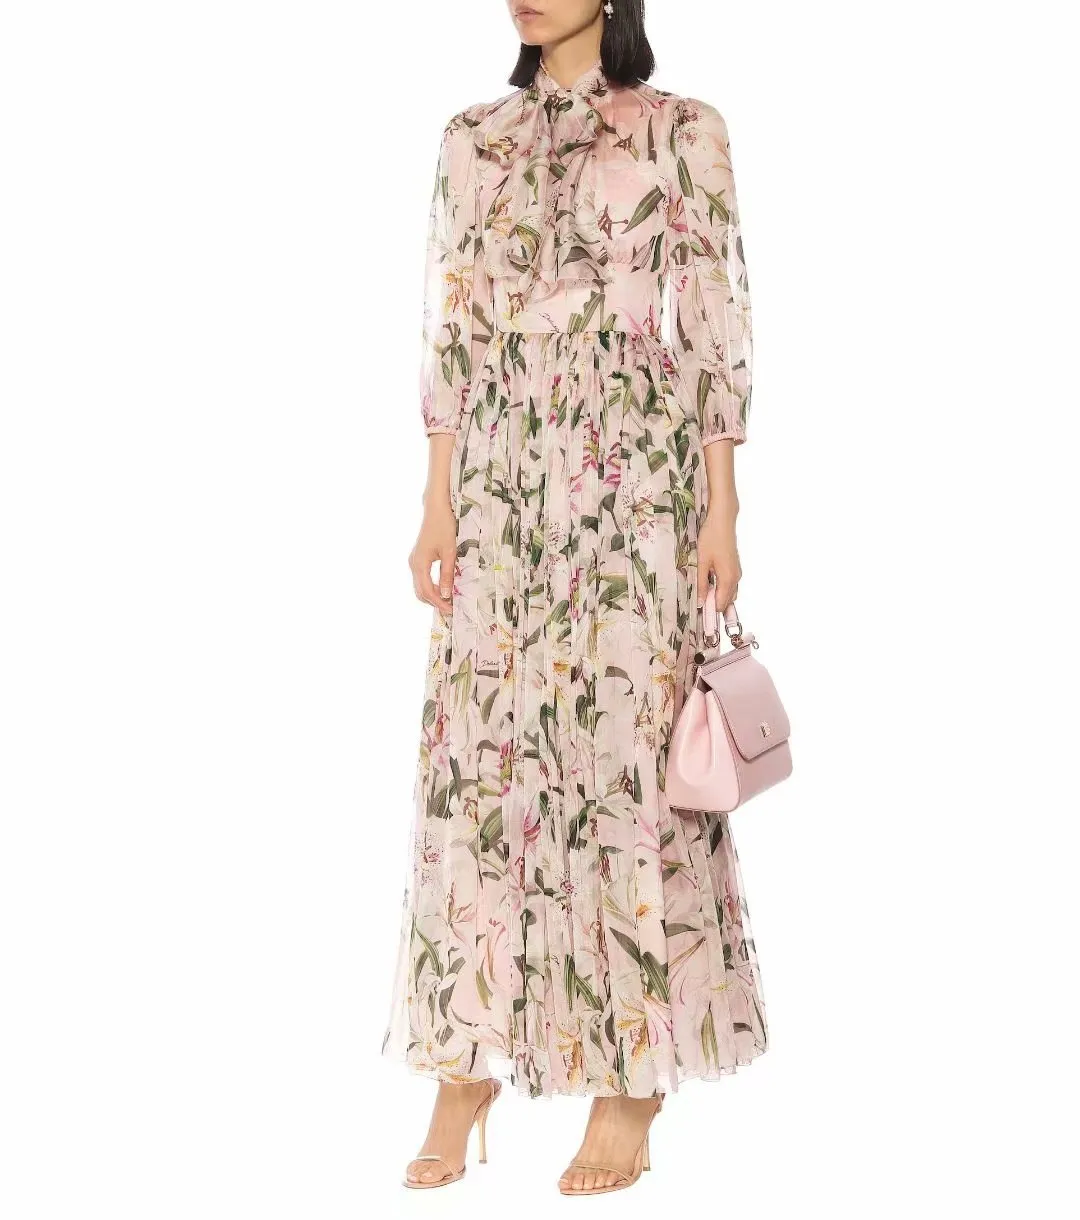 2019 Hösten Runway Klänning Märke Samma Style Dress Flora Print Långärmad Mid Calf Luxury Prom Fashion Women's Clothes As